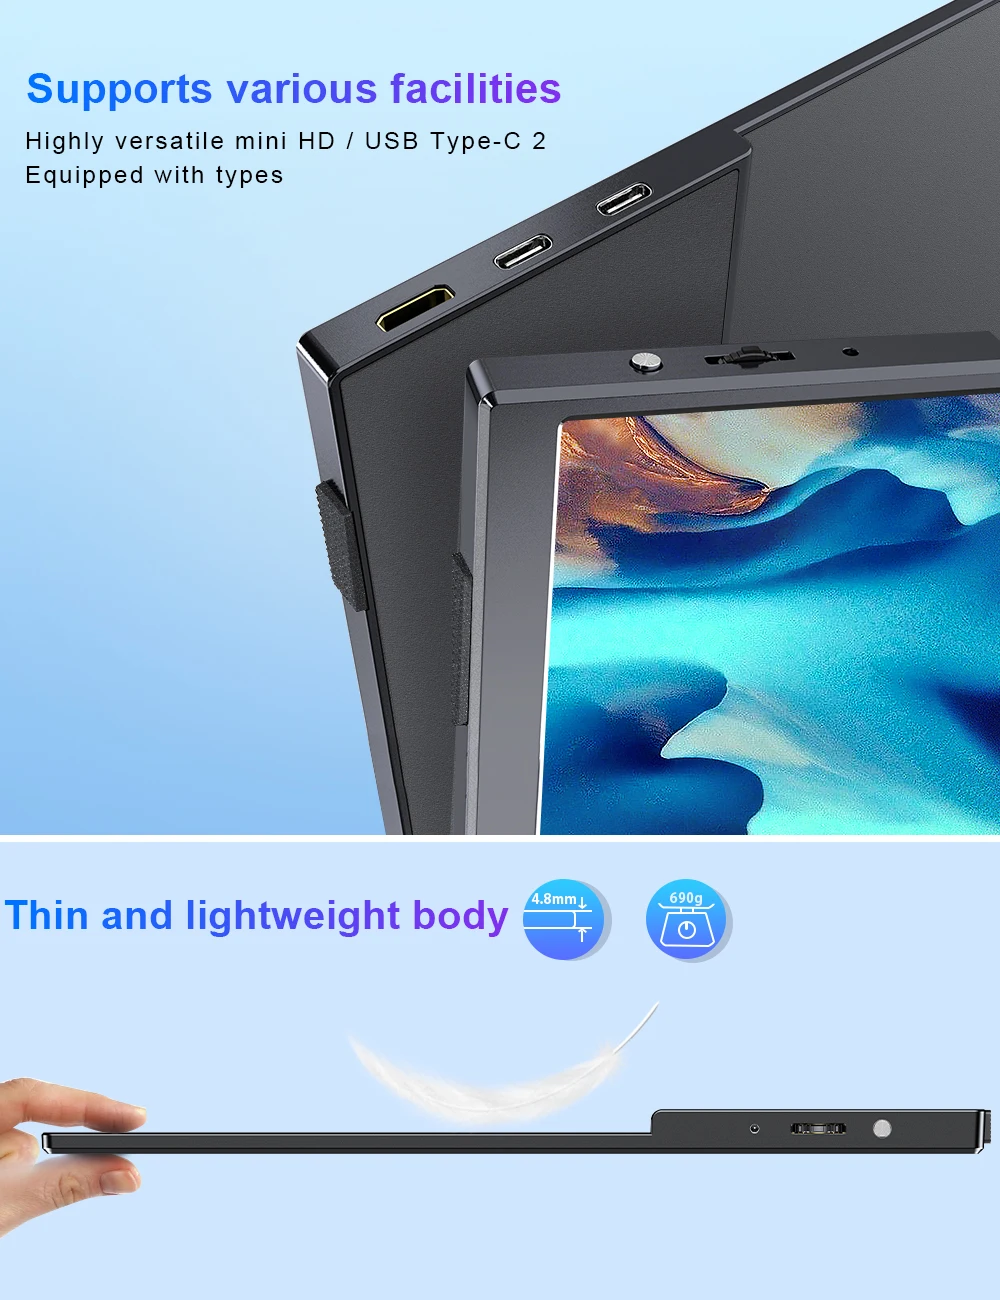 구매 UPERFECT 15.6 인치 터치 스크린 휴대용 모니터, 1080P 슬림 게이밍, PC, 휴대폰, 노트북, Ps4, Xbox, 스위치